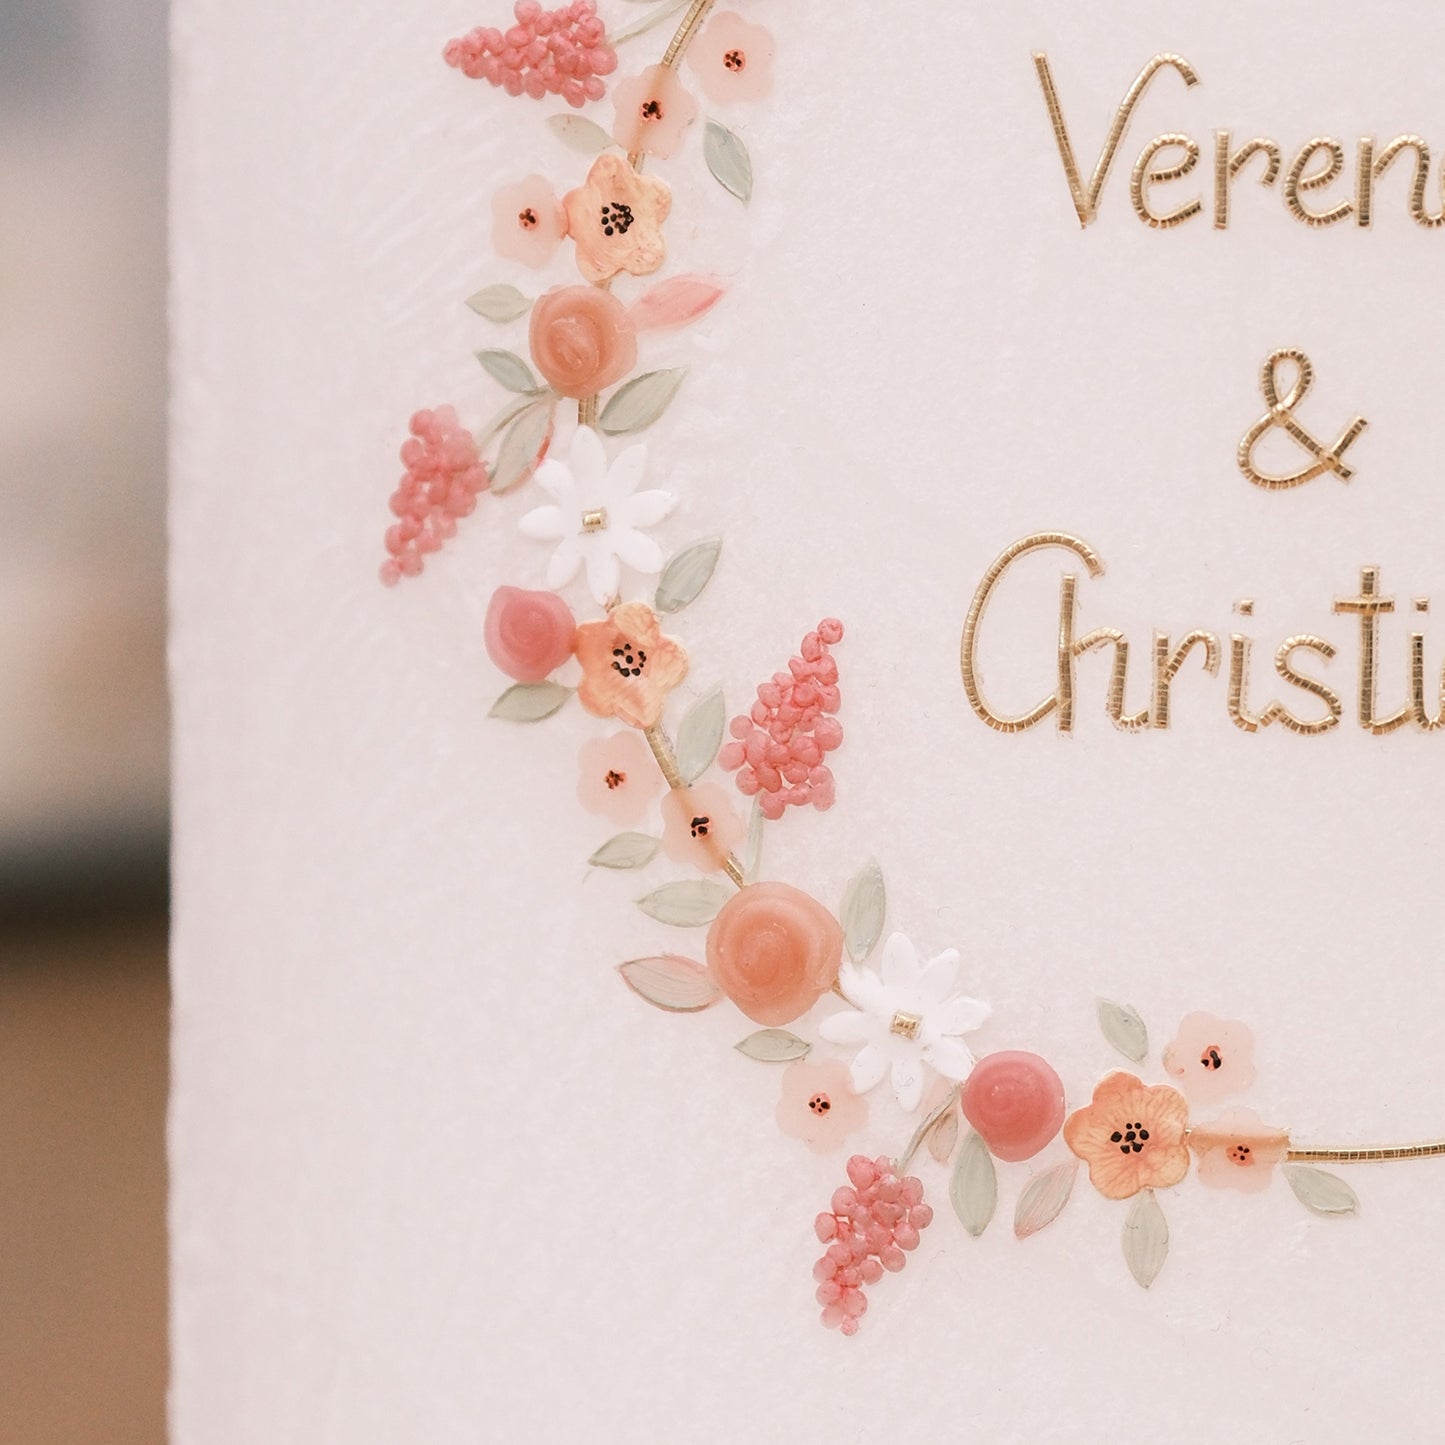 Hochzeitskerze Verena & Christian